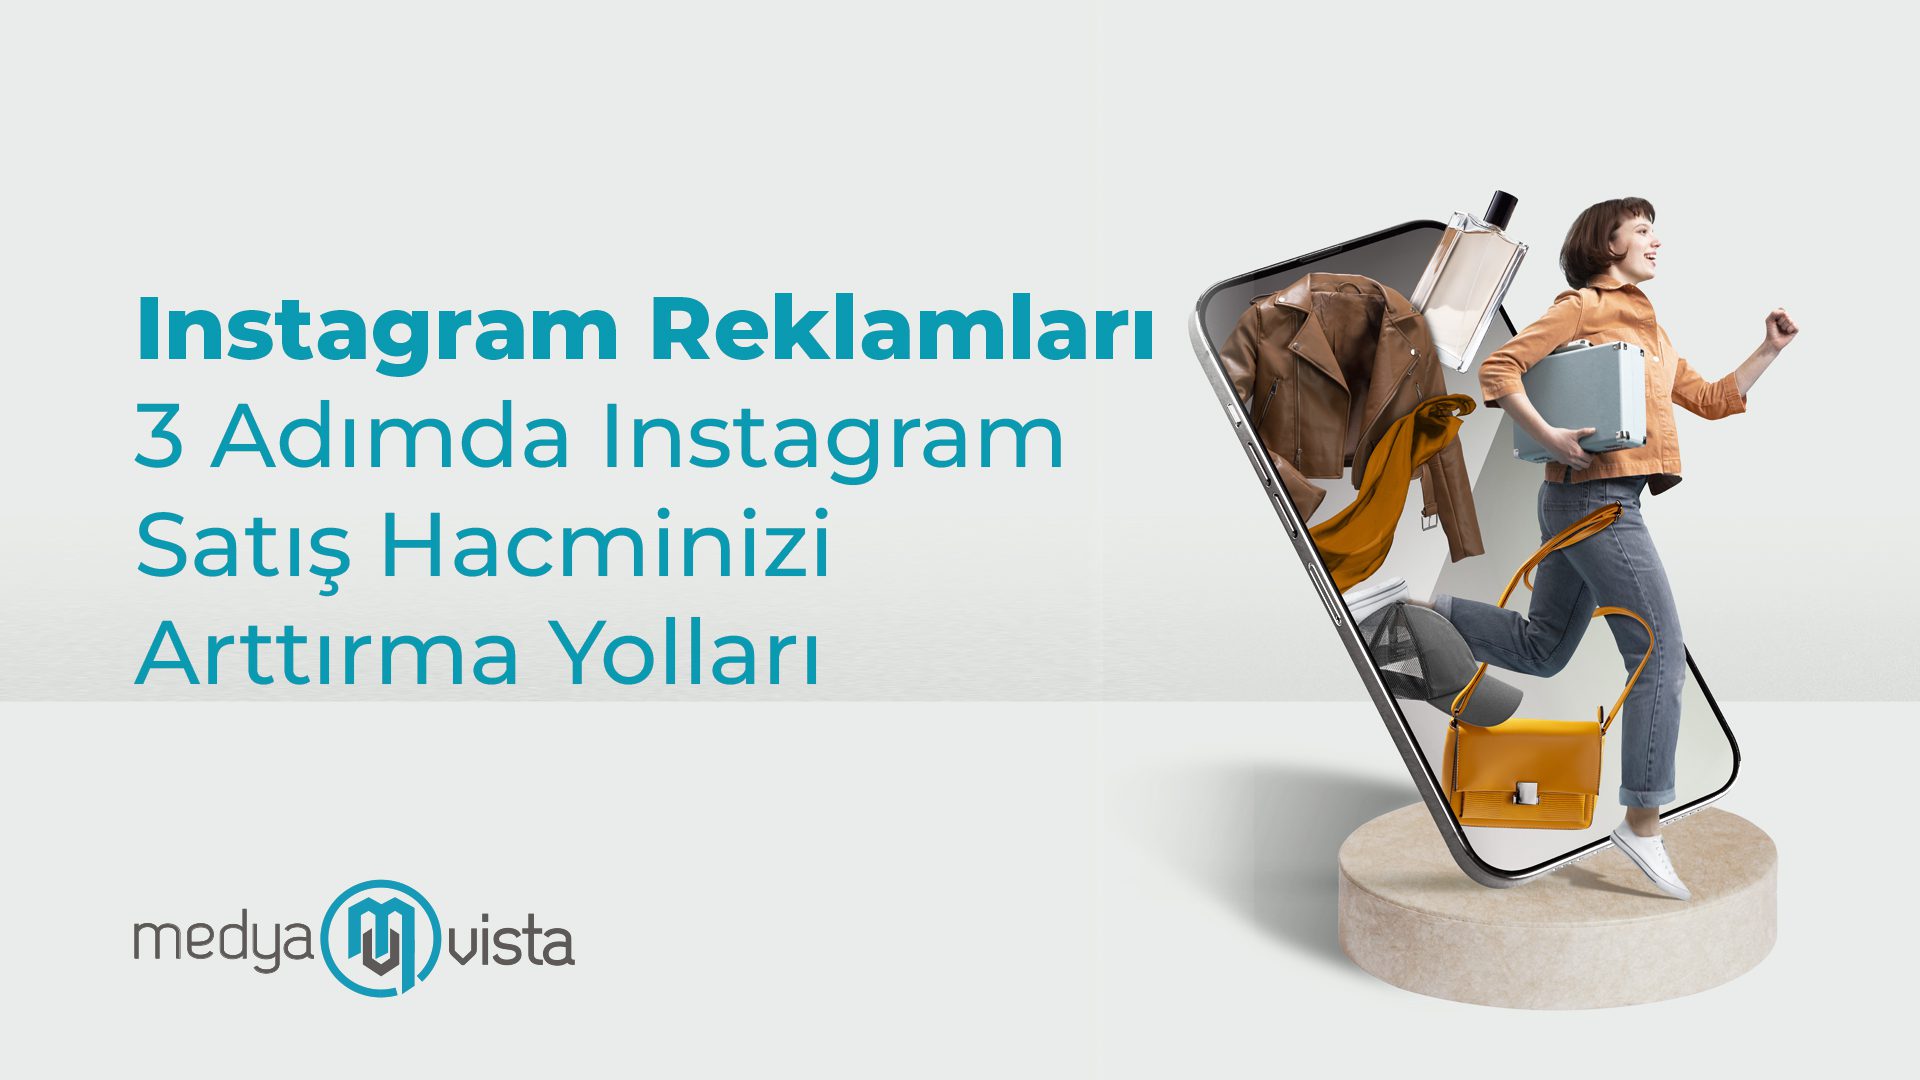 3 Adim da Instagram Reklamlari ile Satis Hacminizi Arttirmanin Yollari